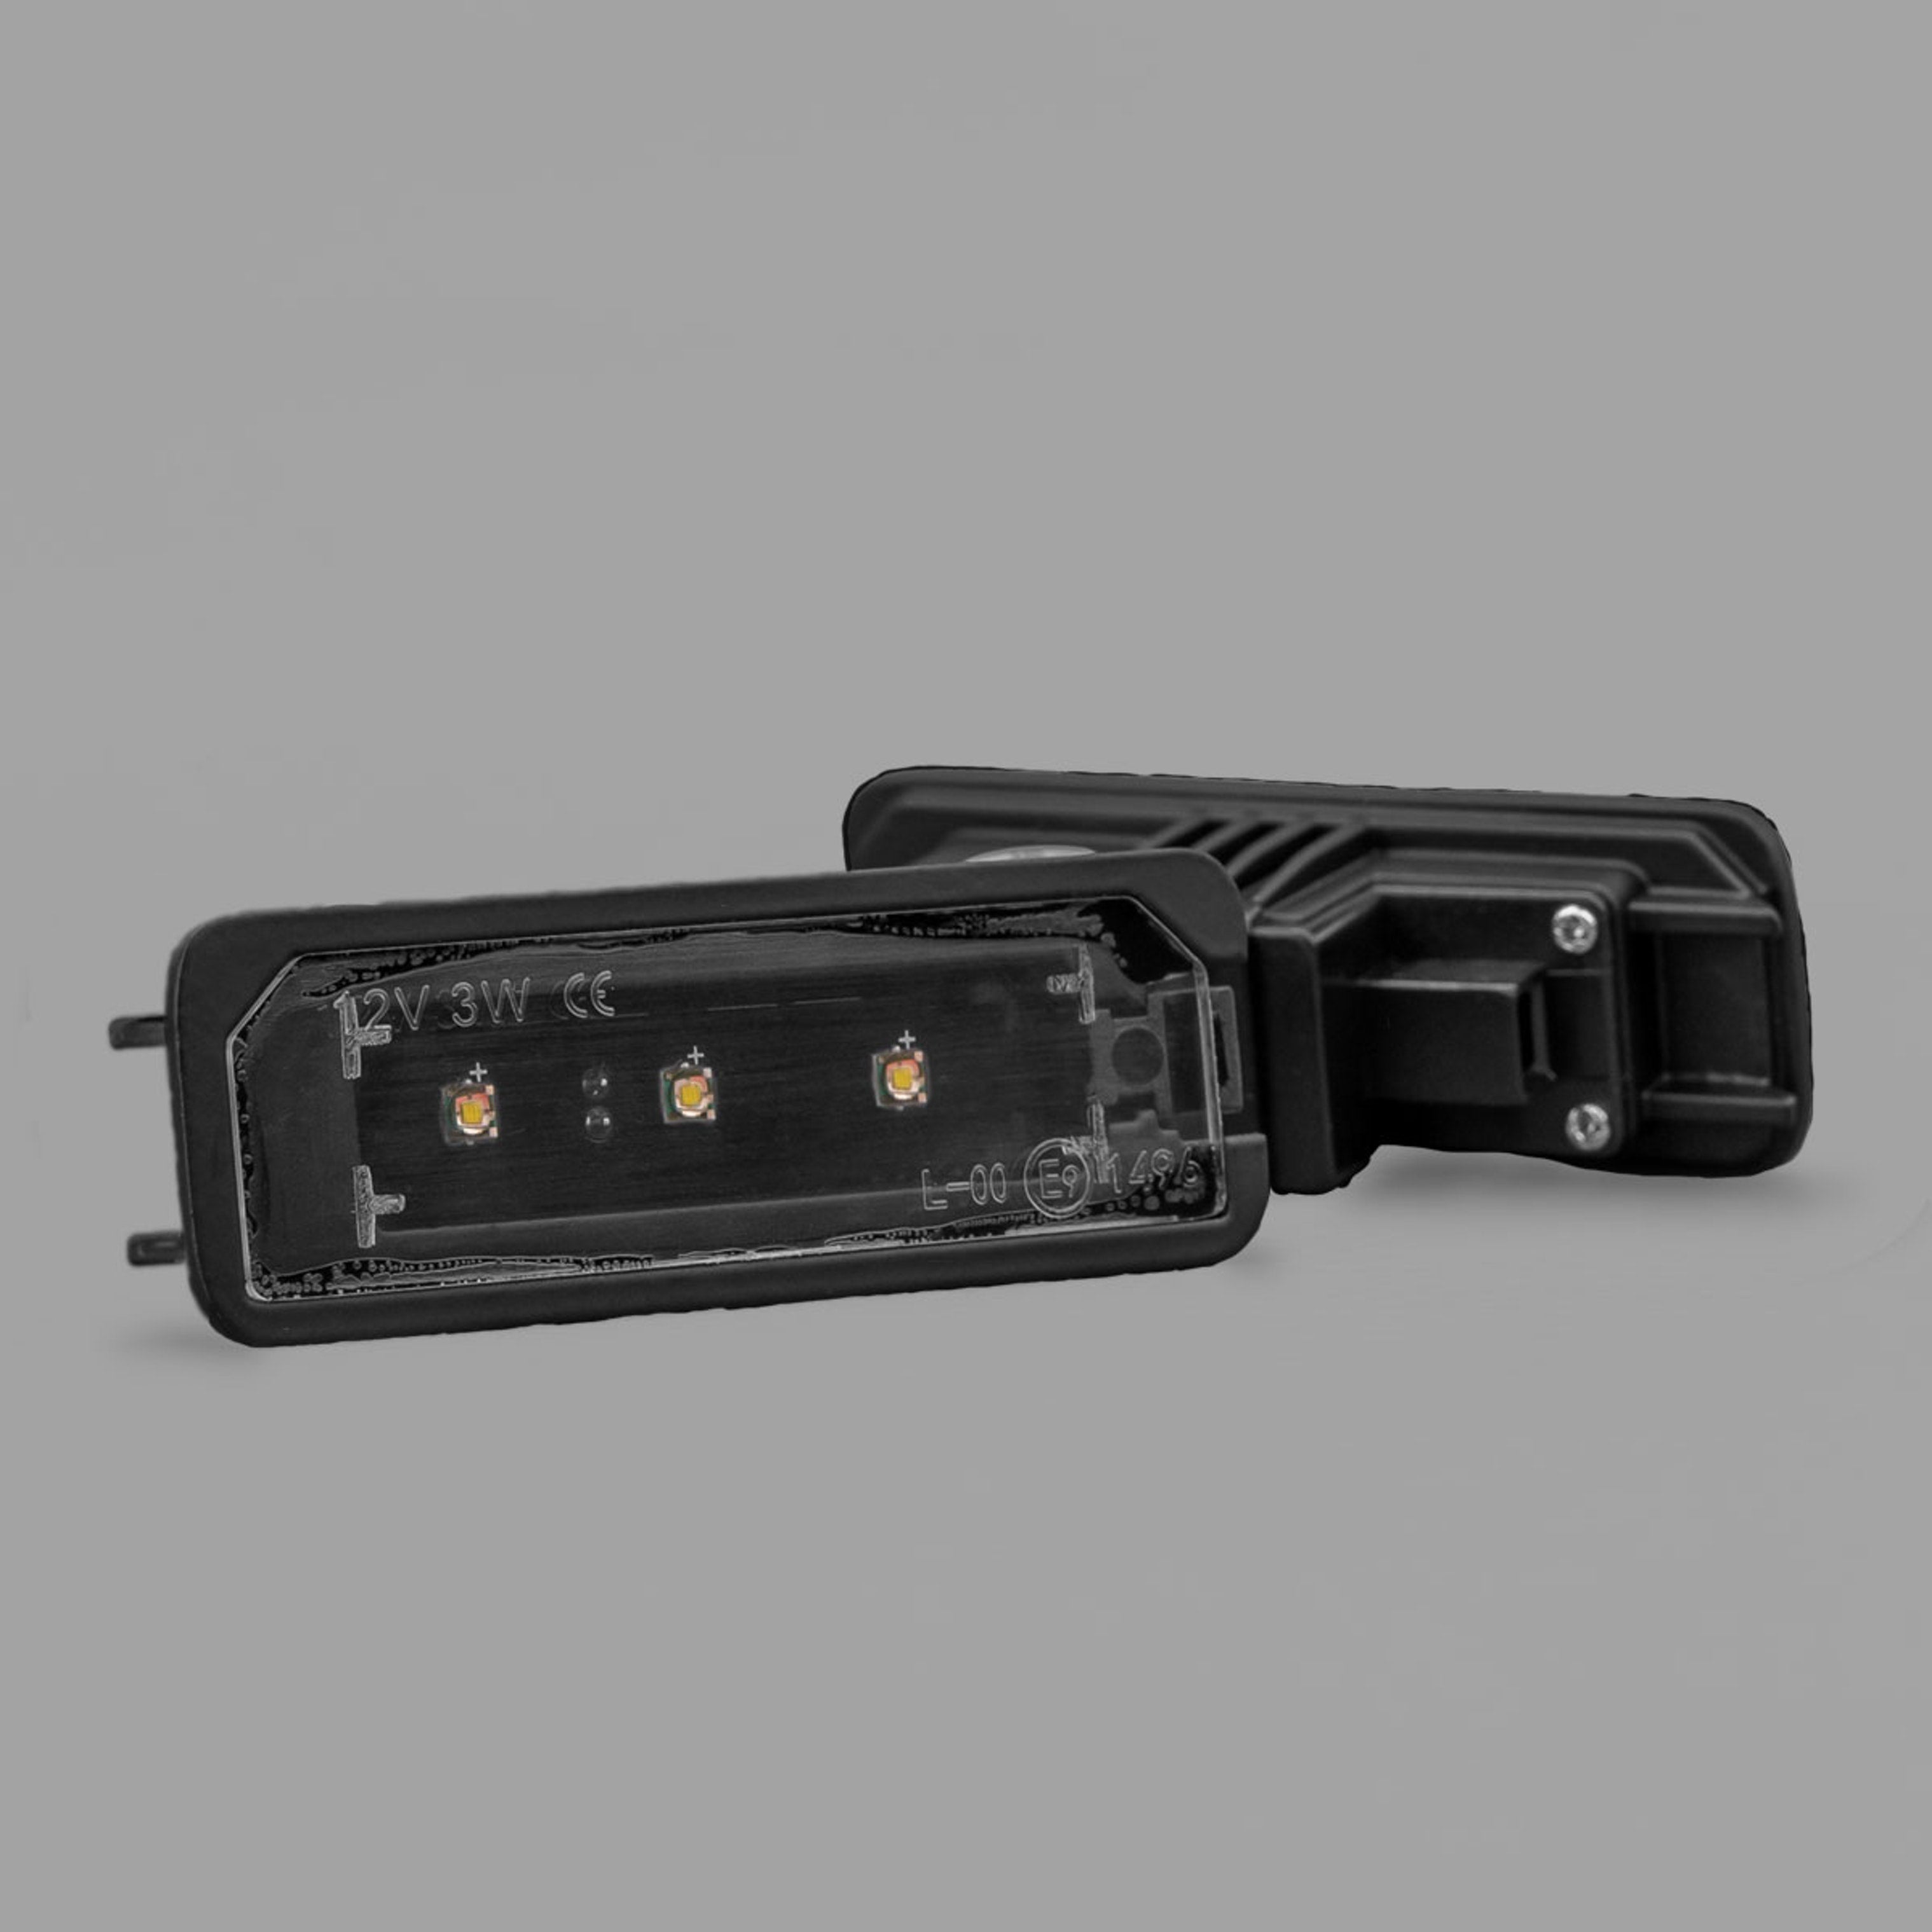 STEDI LED Nummernschildbeleuchtung für VW Amarok